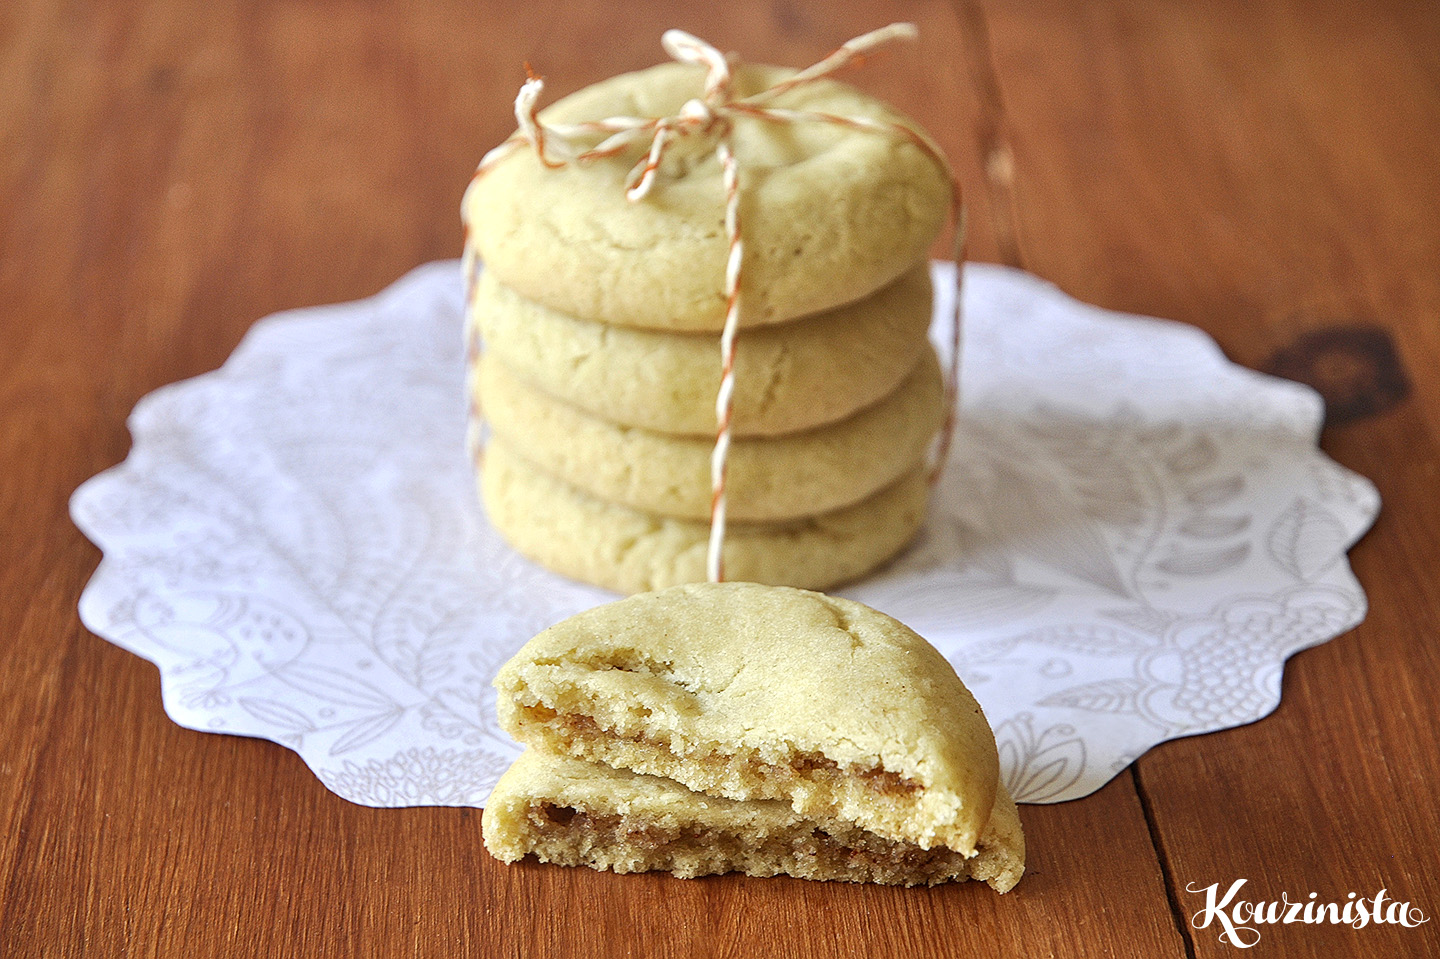 Cookies με γέμιση κανέλας & ζάχαρης / Cinnamon sugar filled cookies